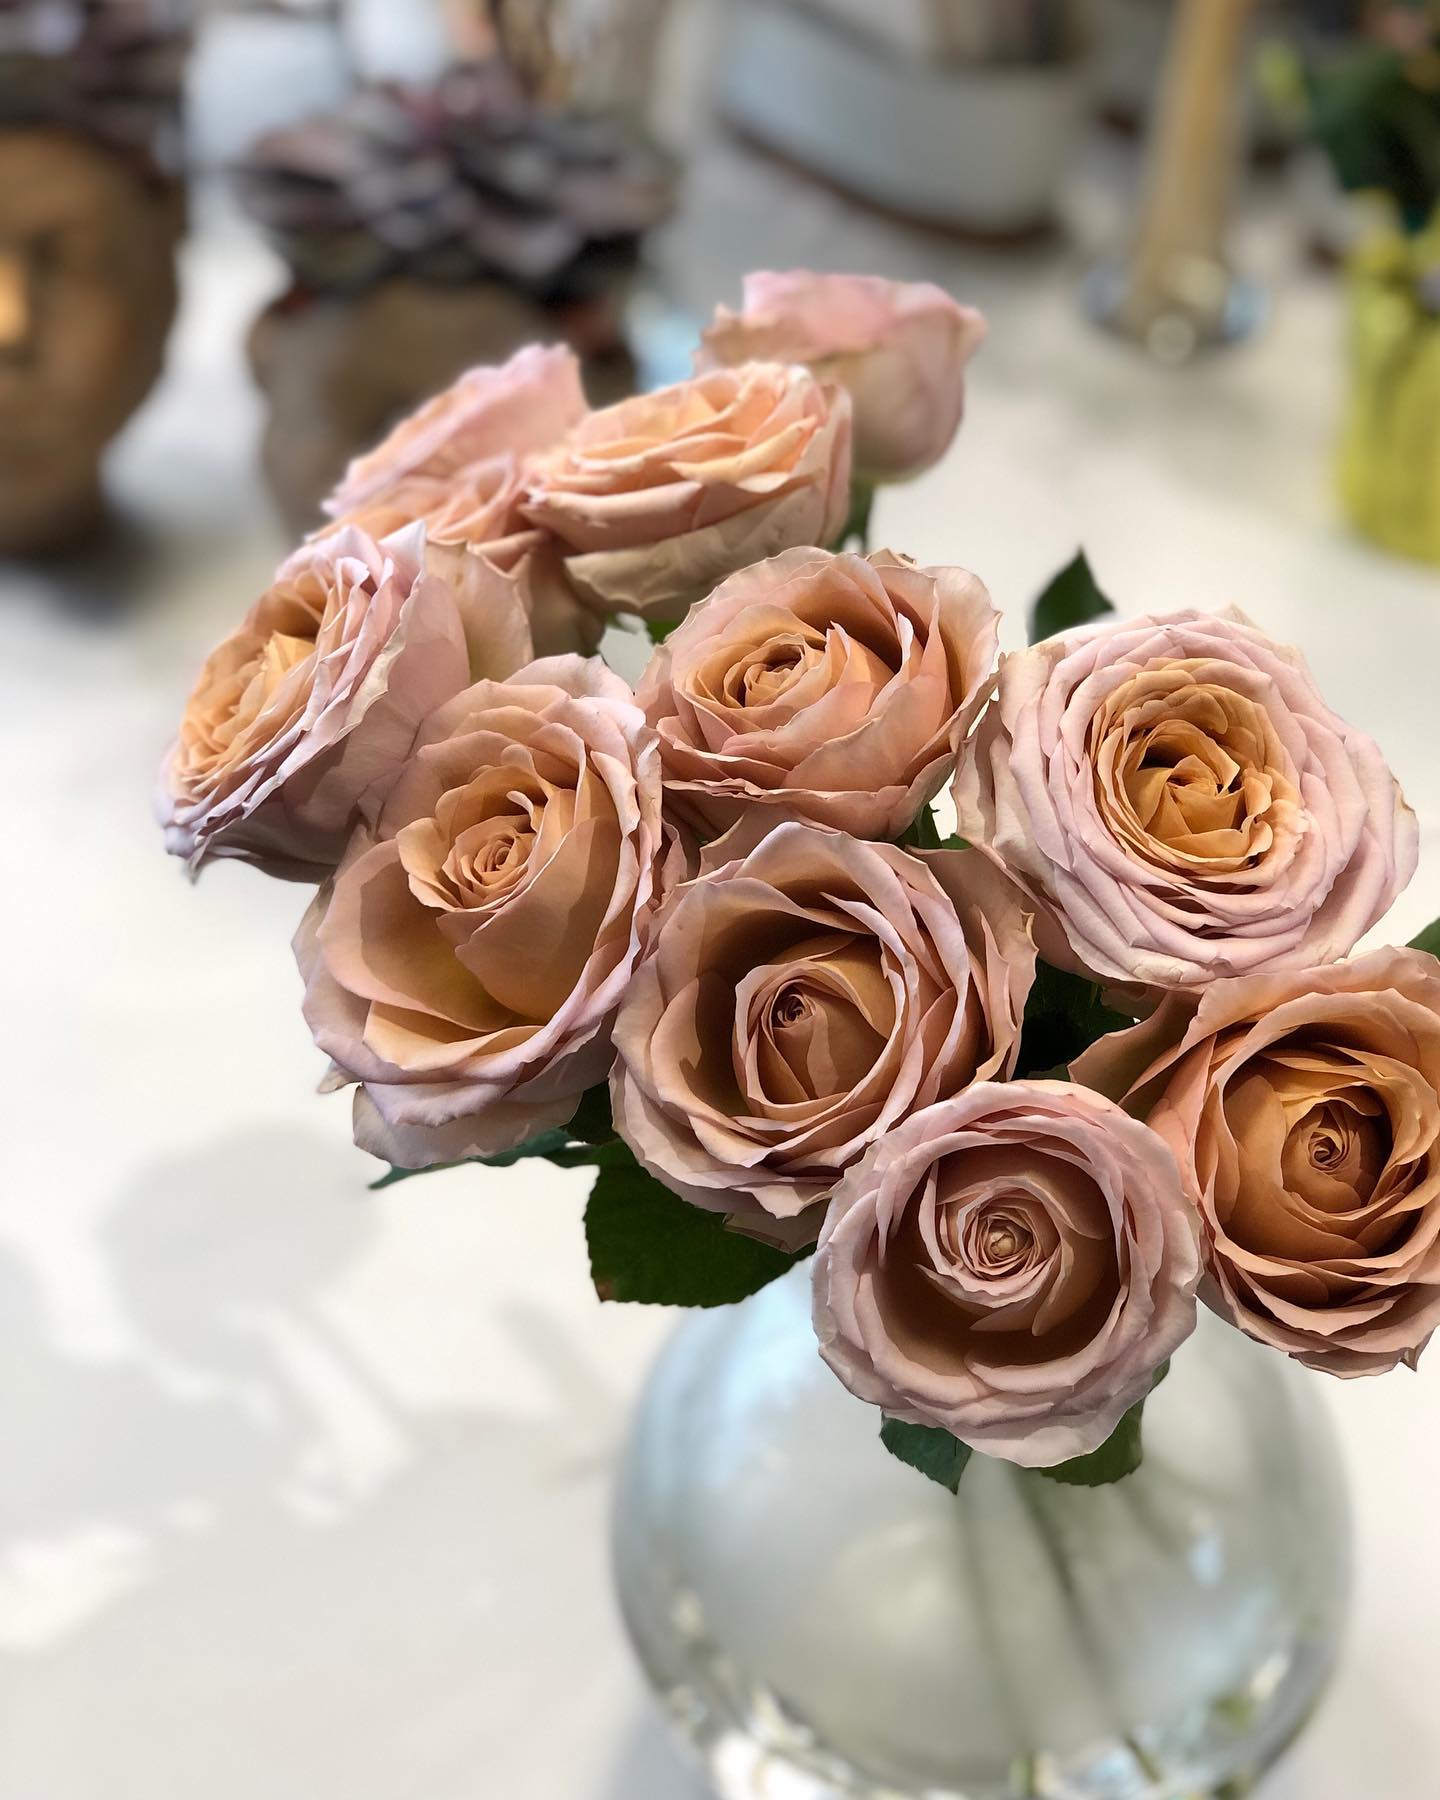 Erilised lilled erilisteks sündmusteks. Cappucino tooni roos. #lilled #lilledkulleriga #lilledkullerigakoju #lillepood #pulm #wedding #pulmaaastapäev